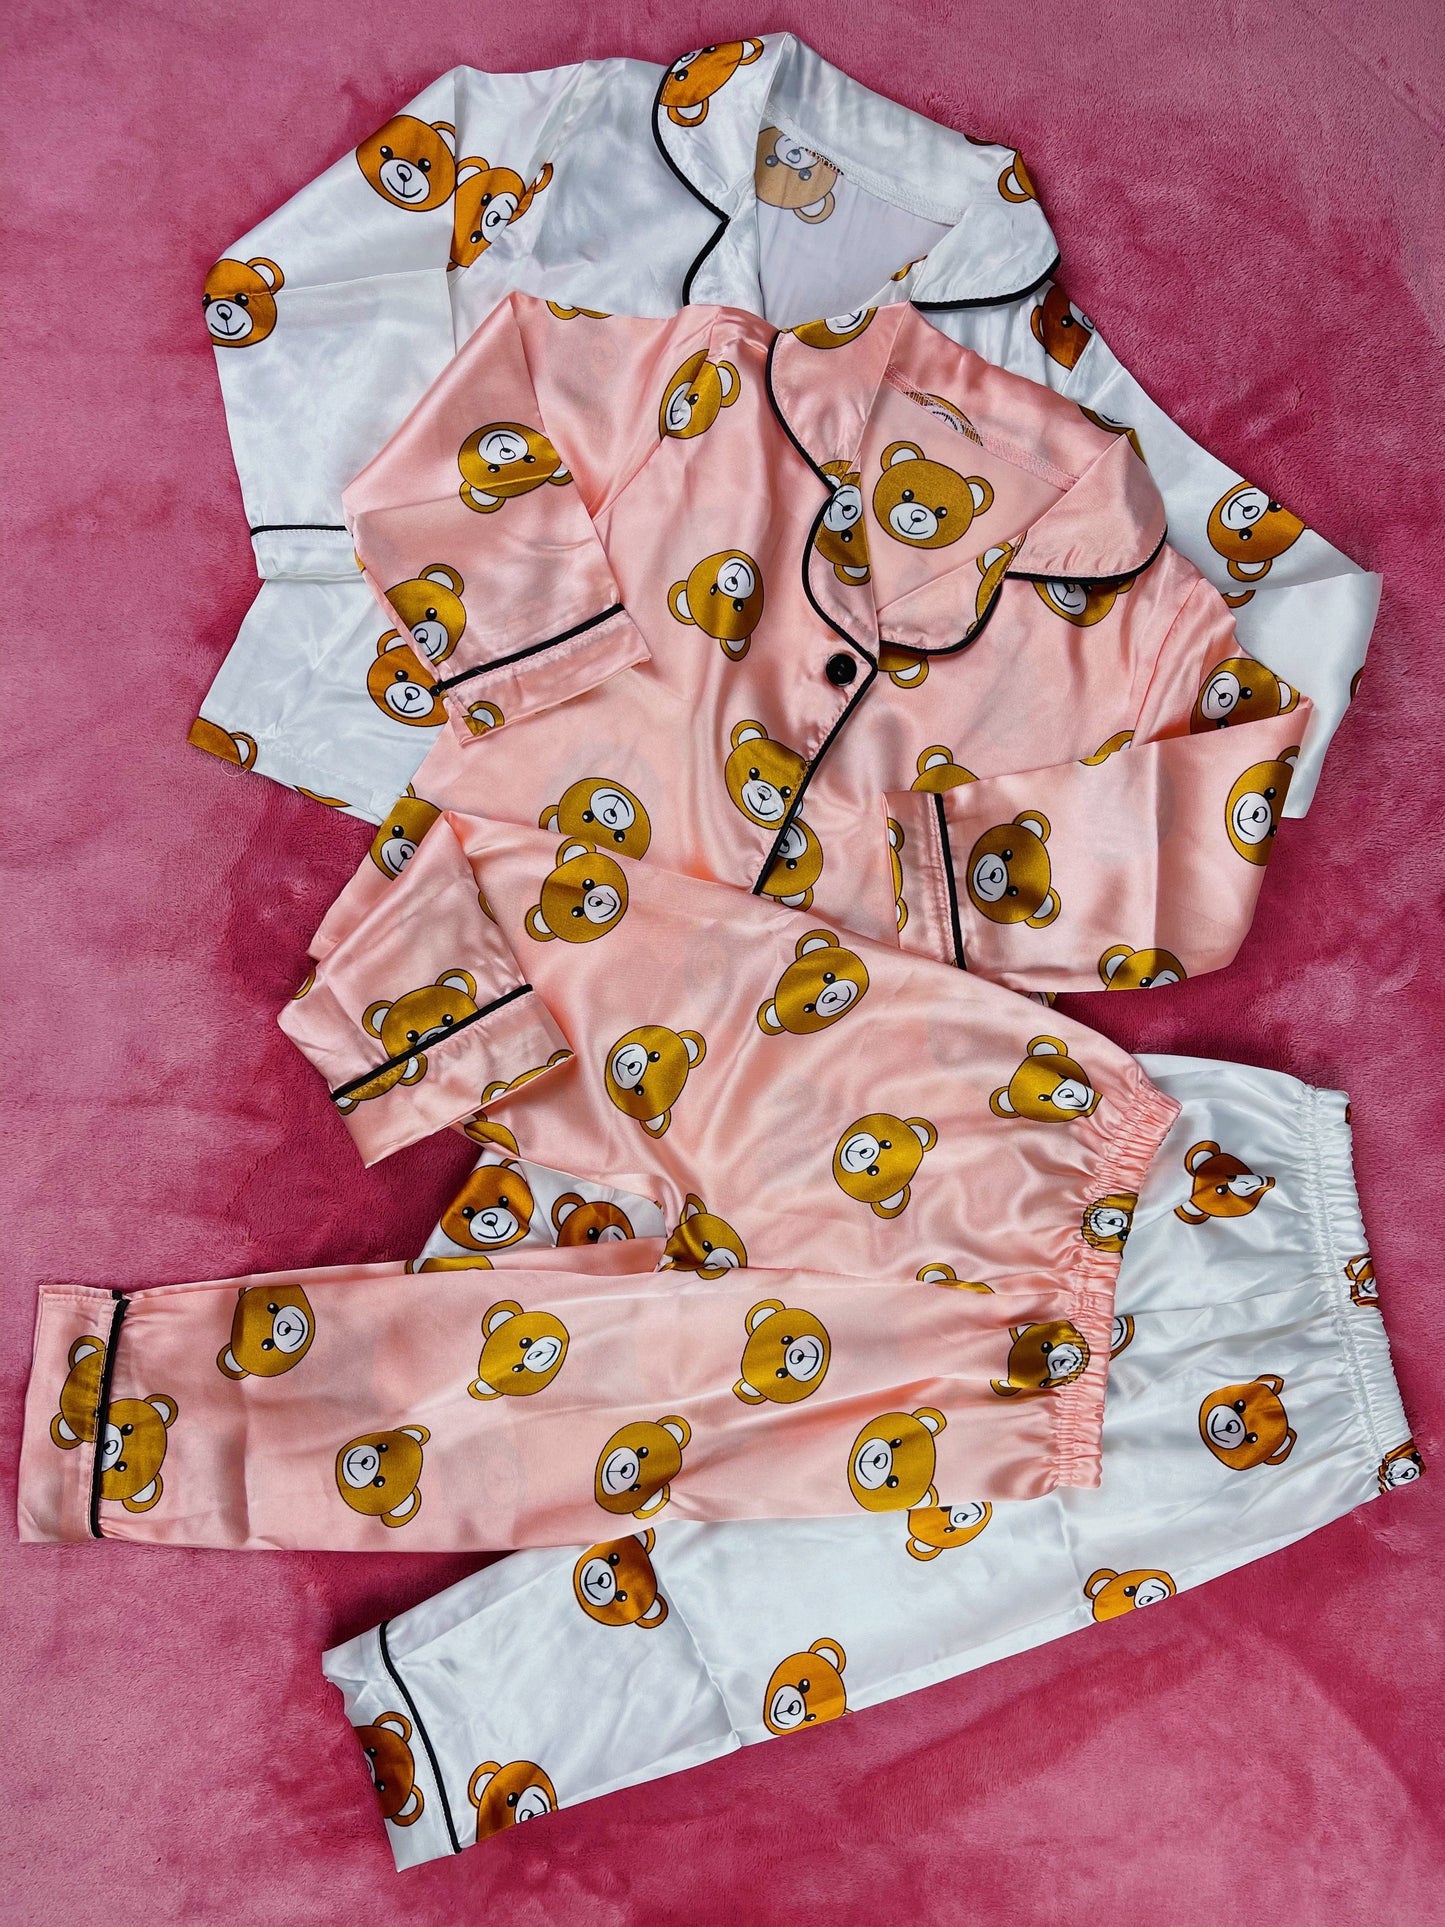 Baby Girl Pajamas